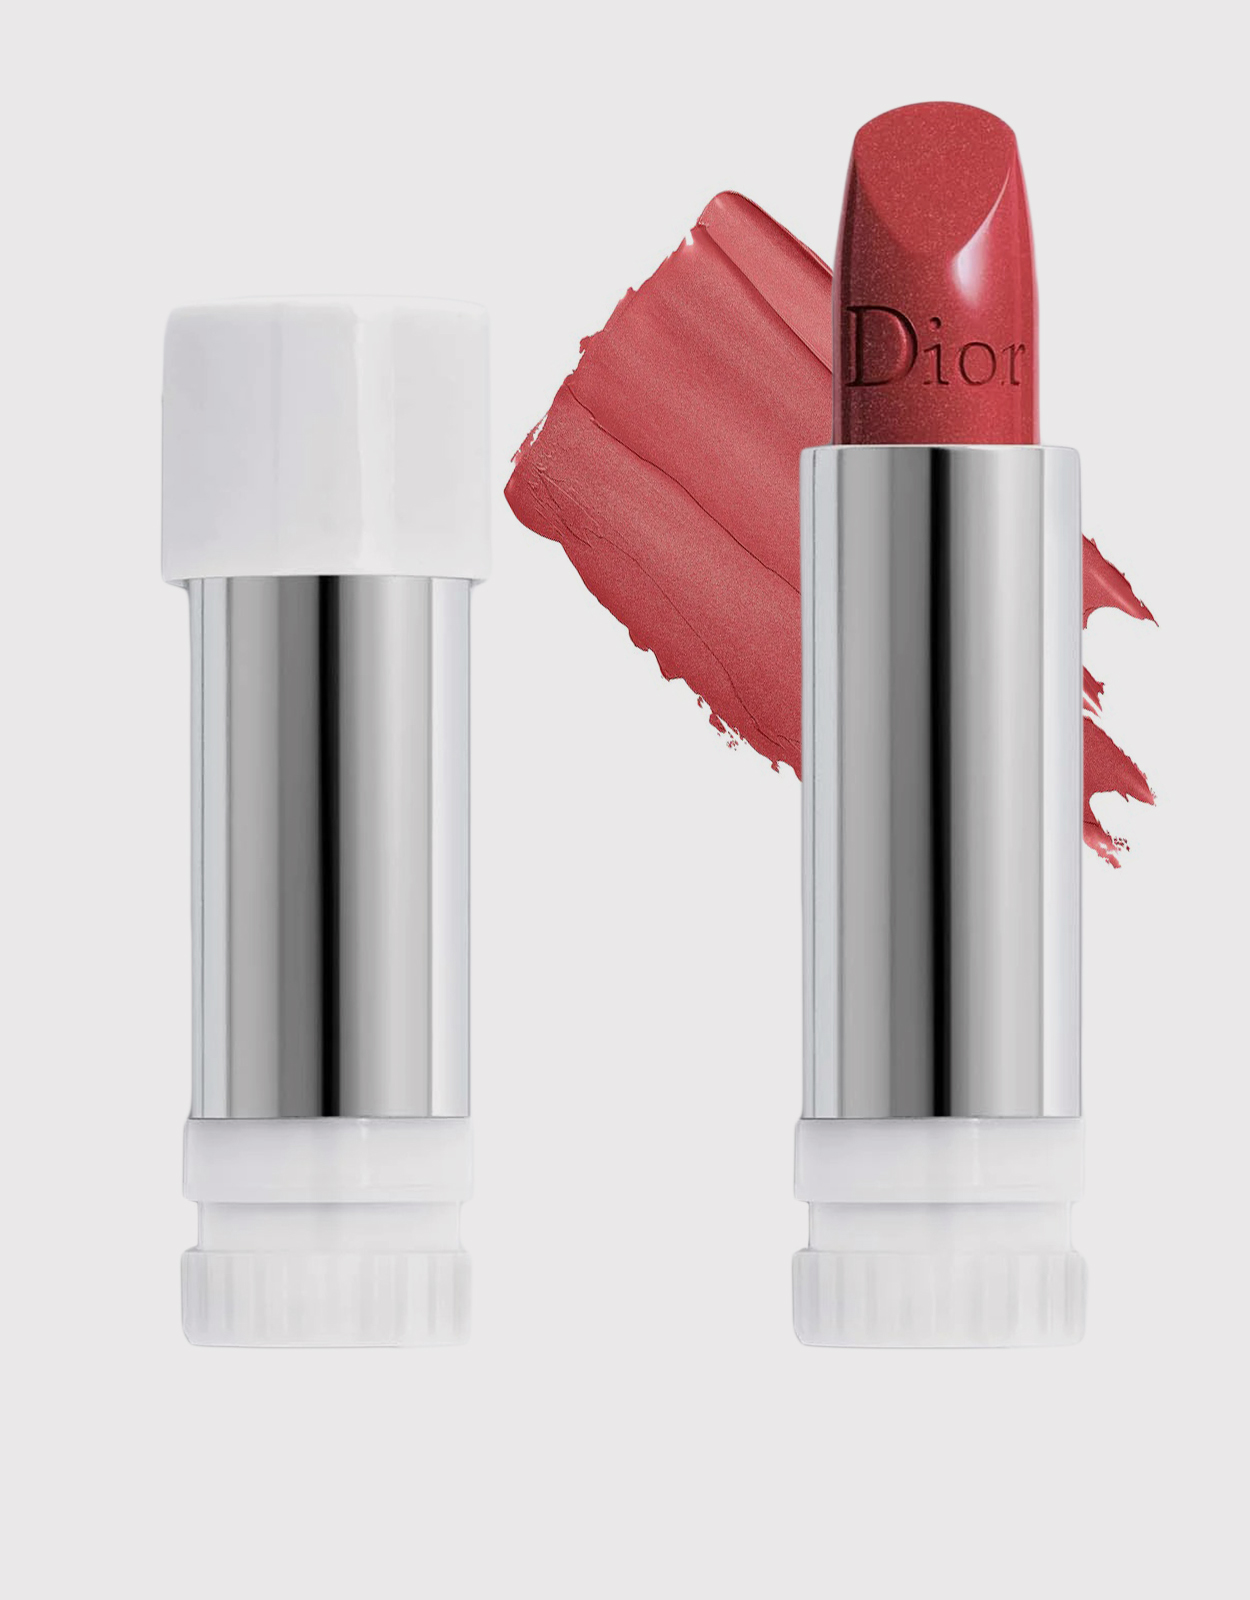 Voor u Gespecificeerd Lam Dior Beauty Rouge Dior Lipstick Refill-525 Cherie (Makeup,Lip,Lipstick)  IFCHIC.COM